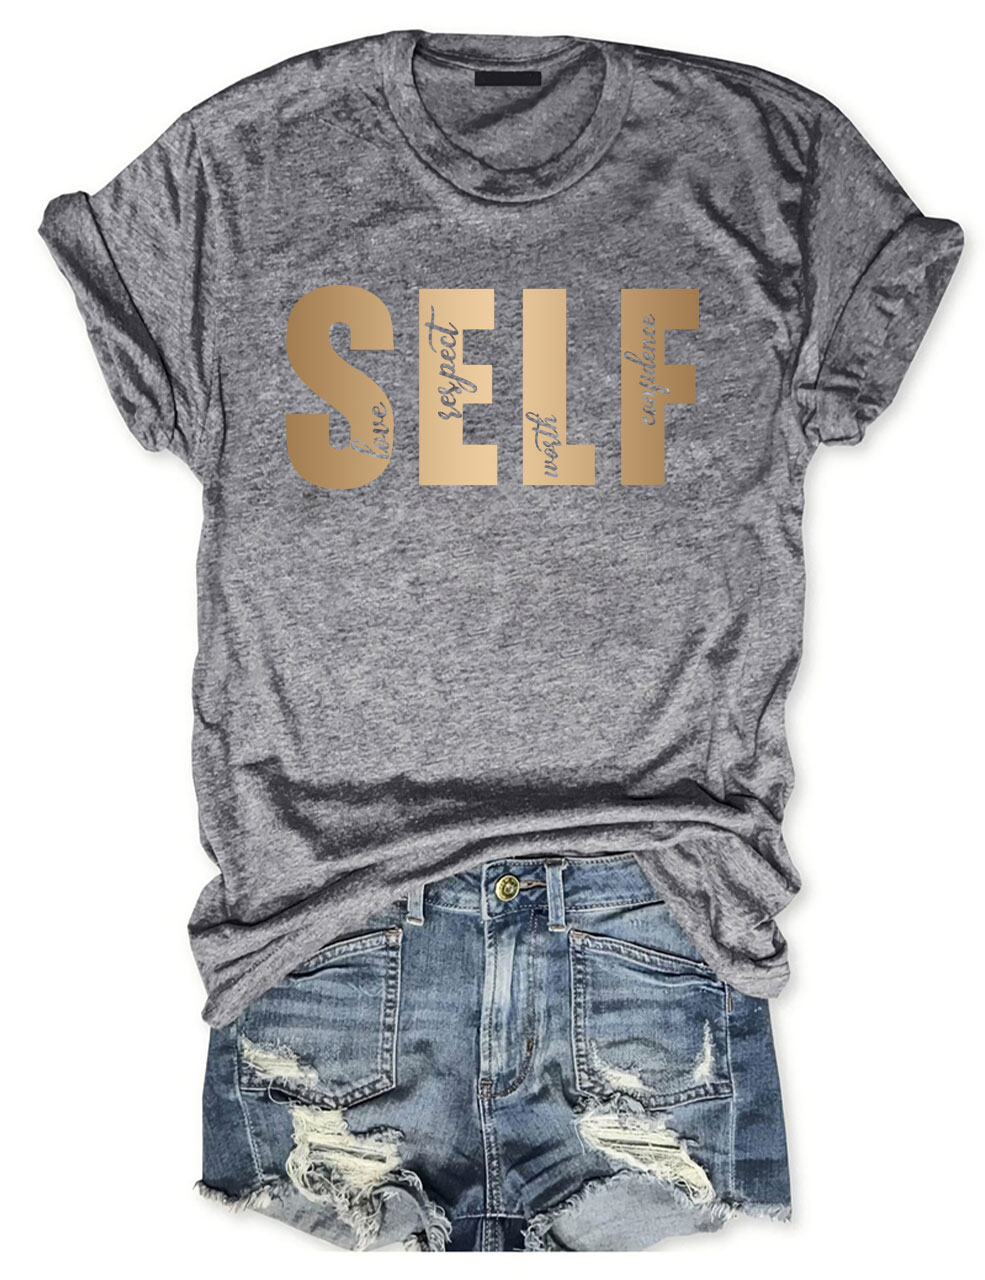 Self Love Respect T-Shirt